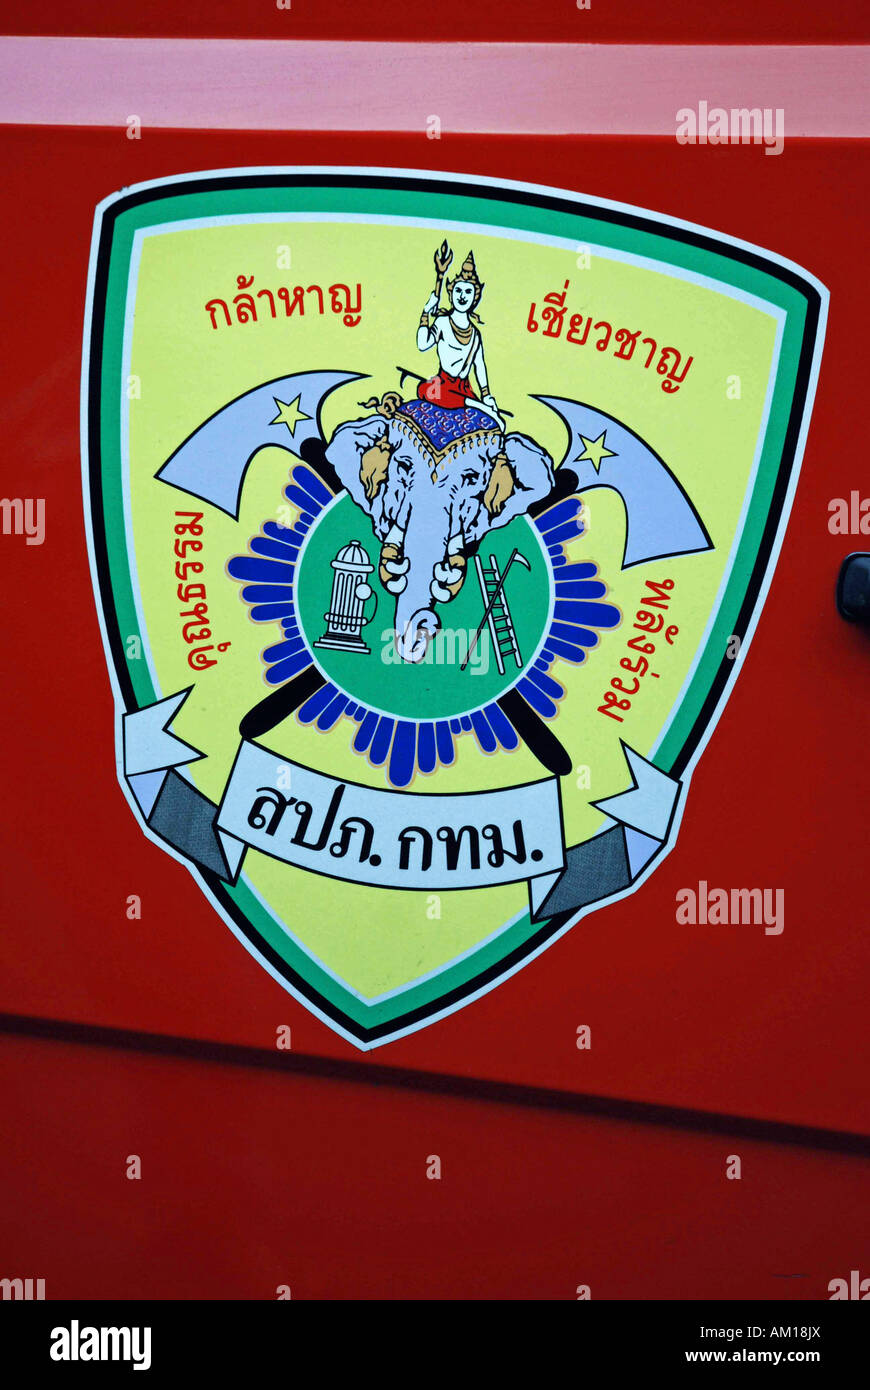 Wappen von der Feuerwehr, Thailand, Asien Stockfoto